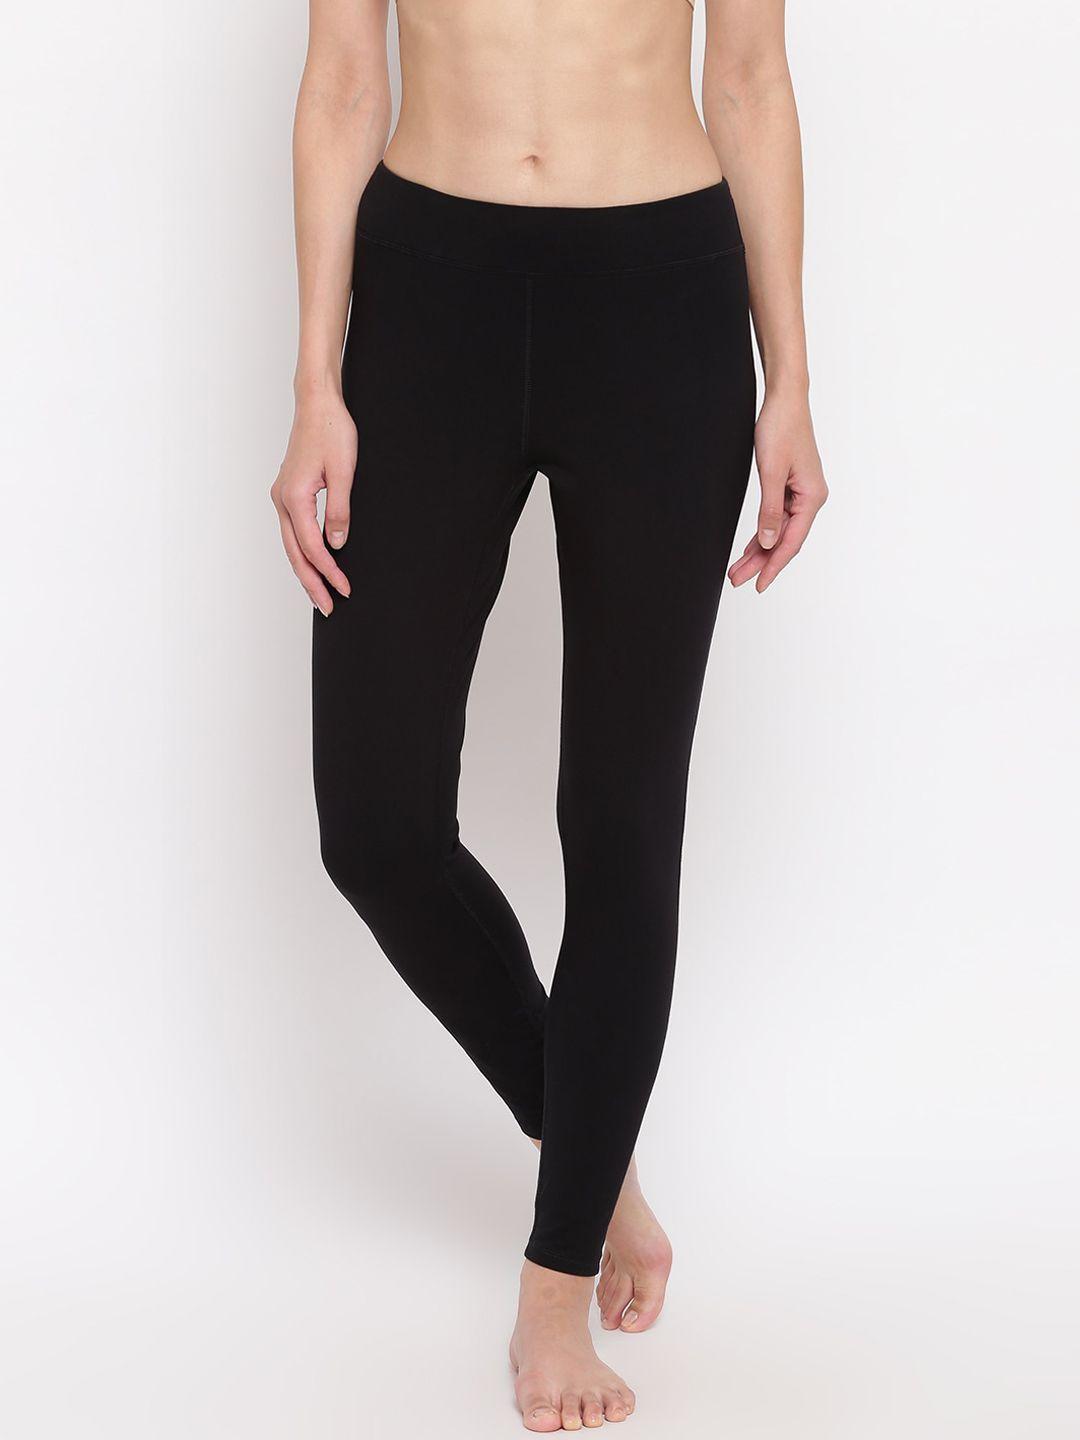 enamor women black slim fit ankle-length cotton yoga leggings